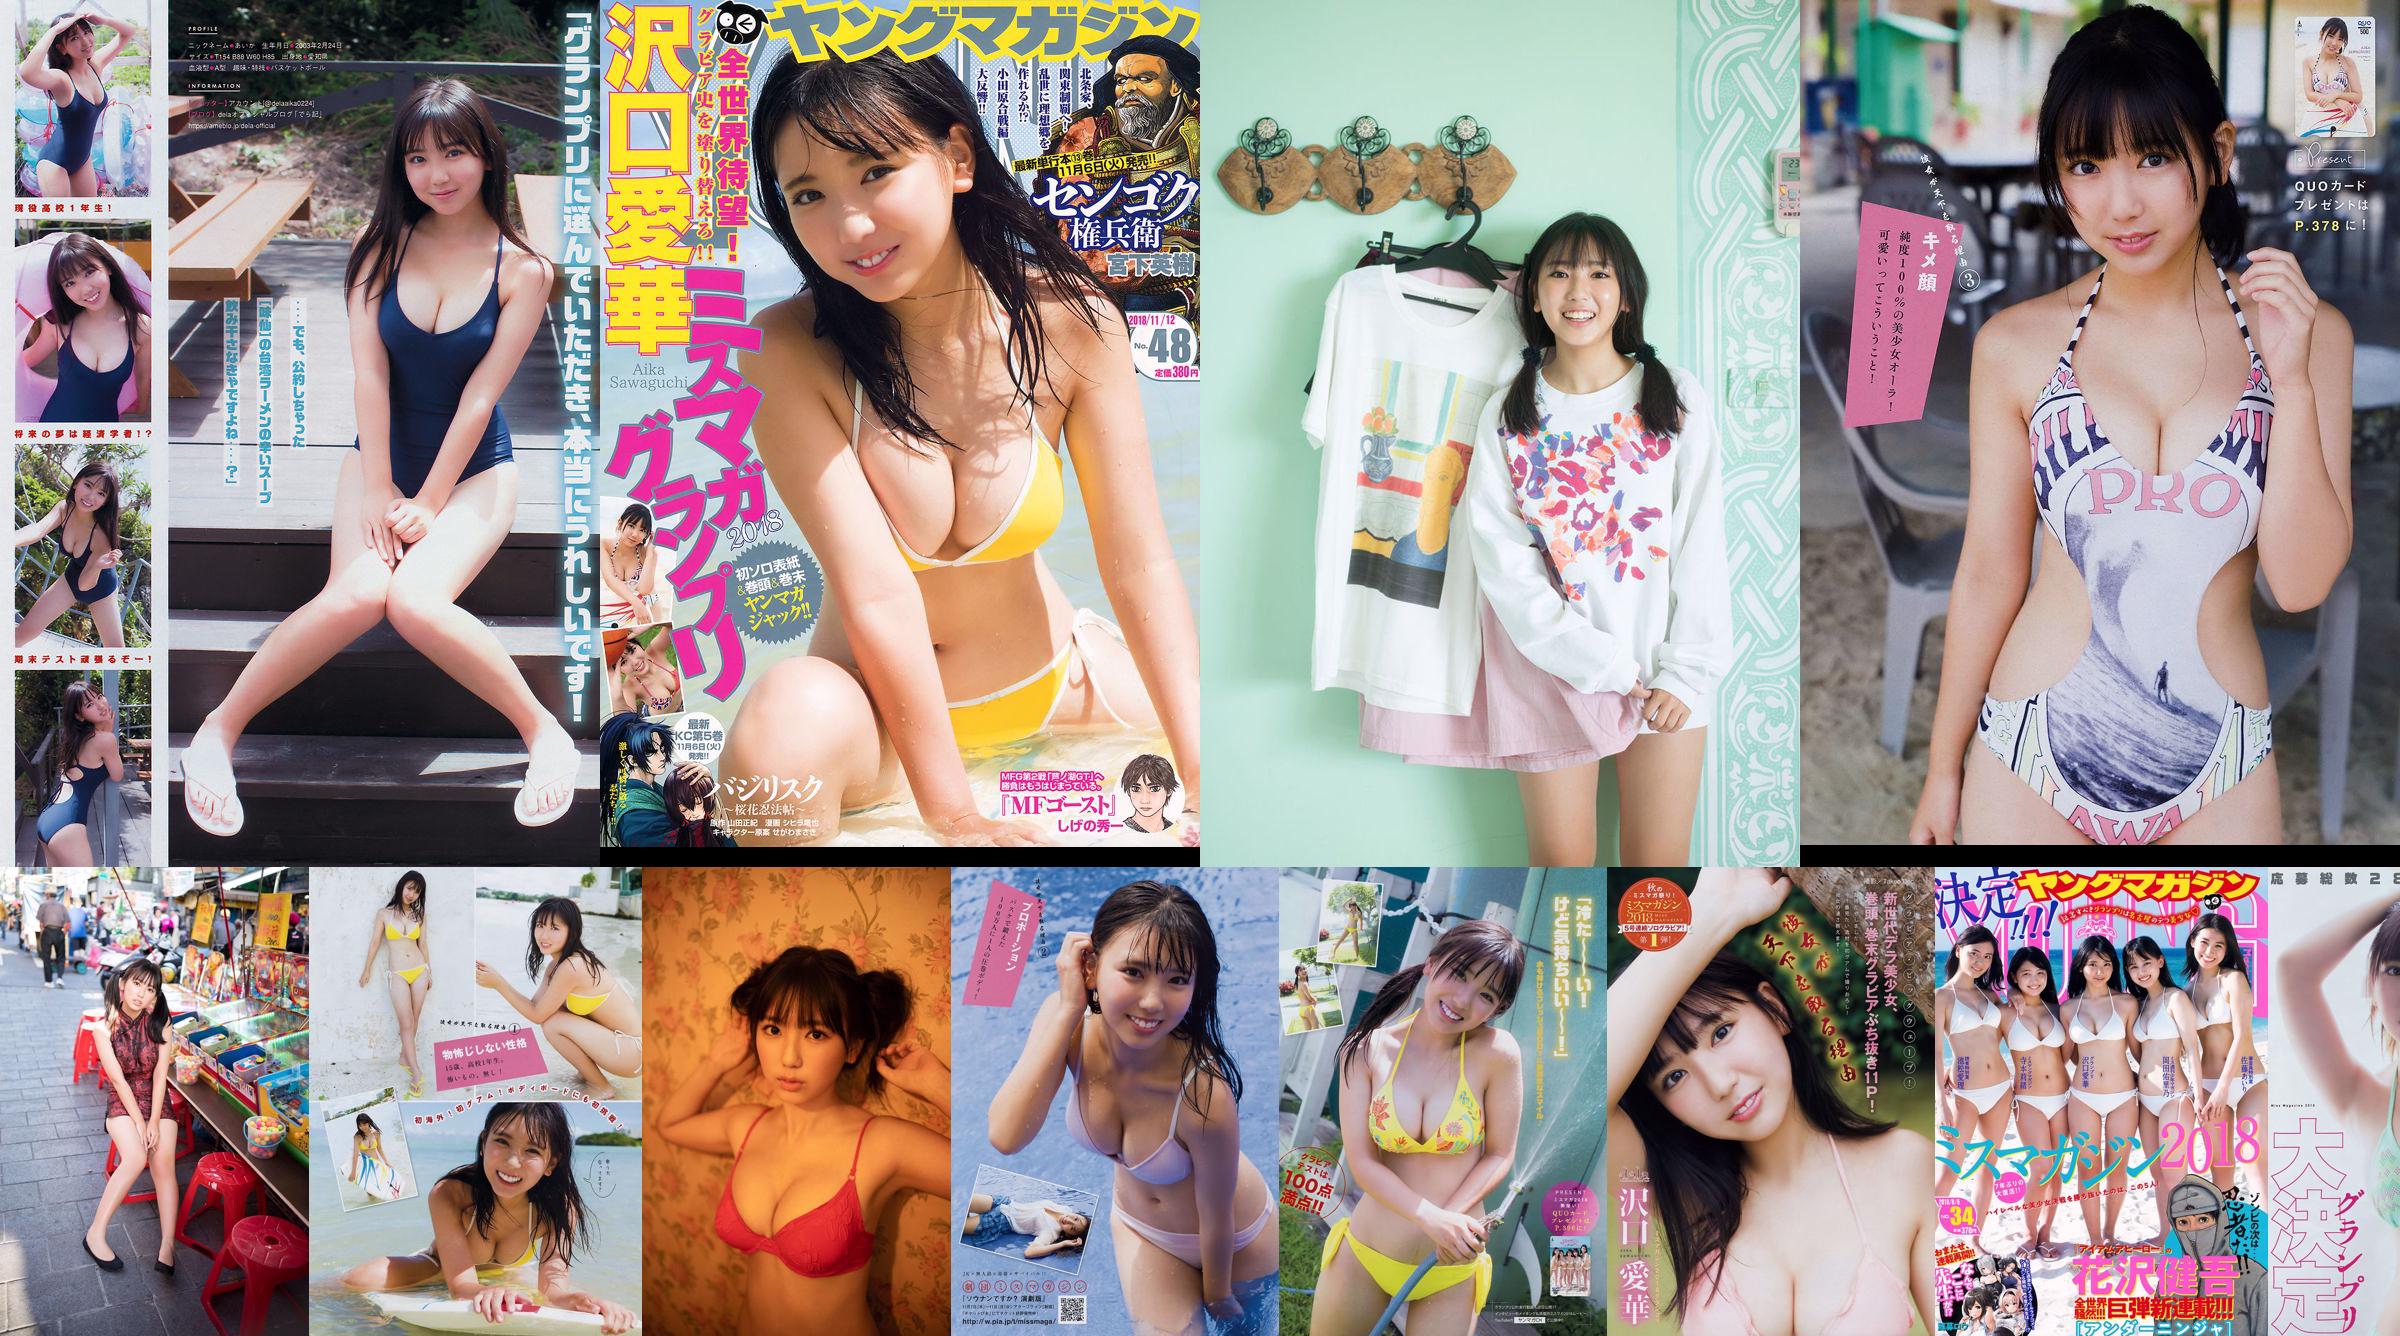 [Young Magazine] Aika Sawaguchi No.48 Photo Magazine nel 2018 No.8ac9e3 Pagina 4